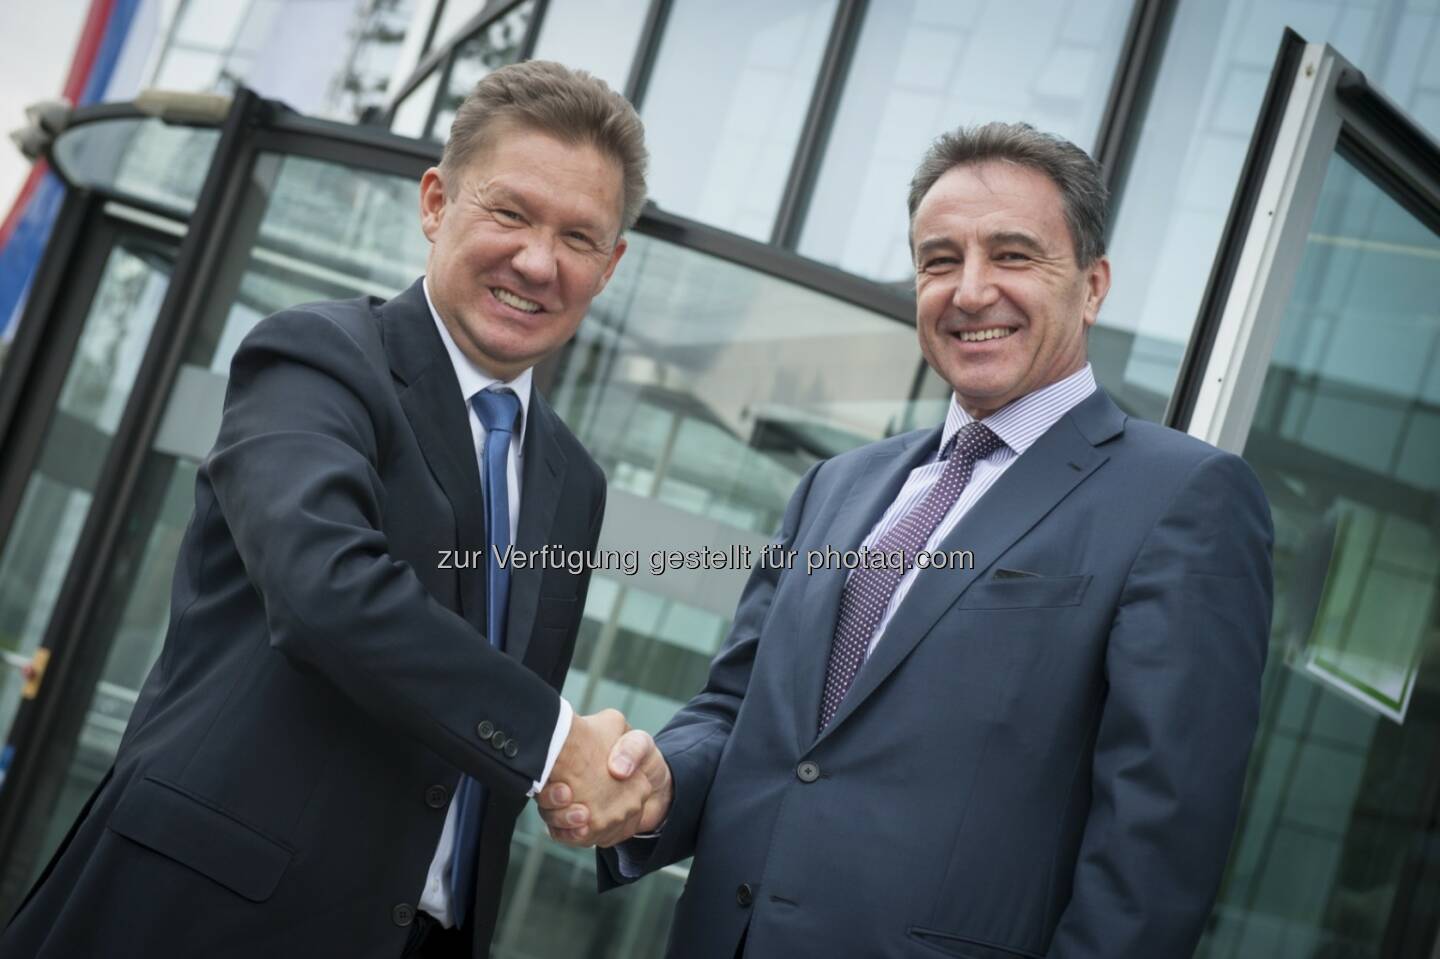 Treffen von Gazprom CEO Miller mit OMV CEO Roiss zur weiteren Festigung der Partnerschaft: 
Herausforderndes Gasumfeld thematisiert (c) OMV